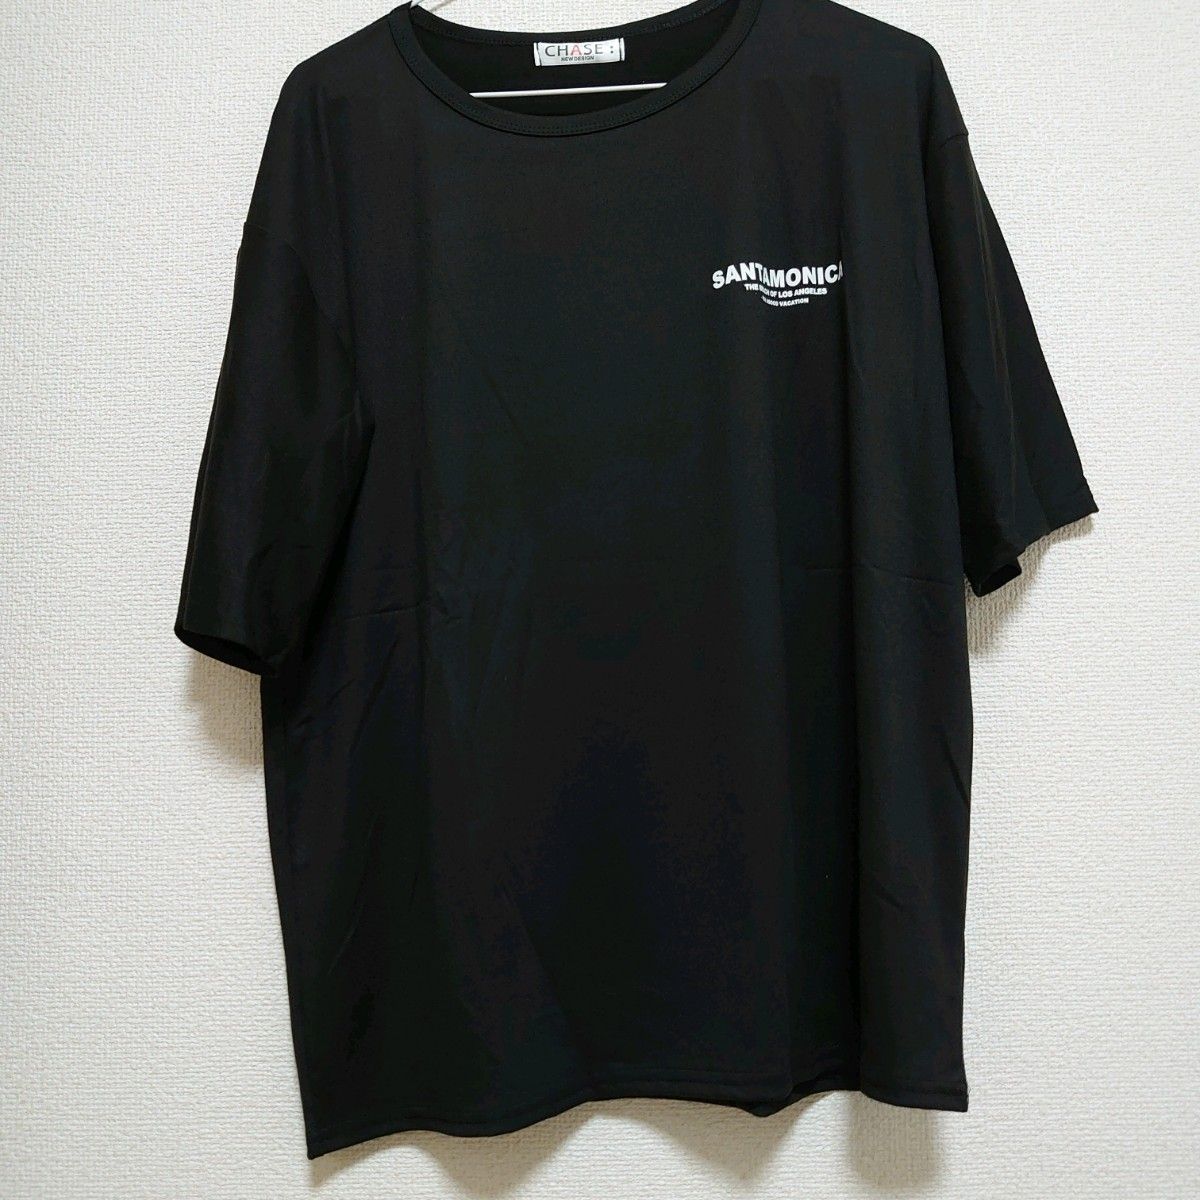 メンズ tシャツ Lサイズ 黒 ブラック 半袖 プリントtシャツ オーバーサイズ バックプリント ストリート 韓国 カットソー